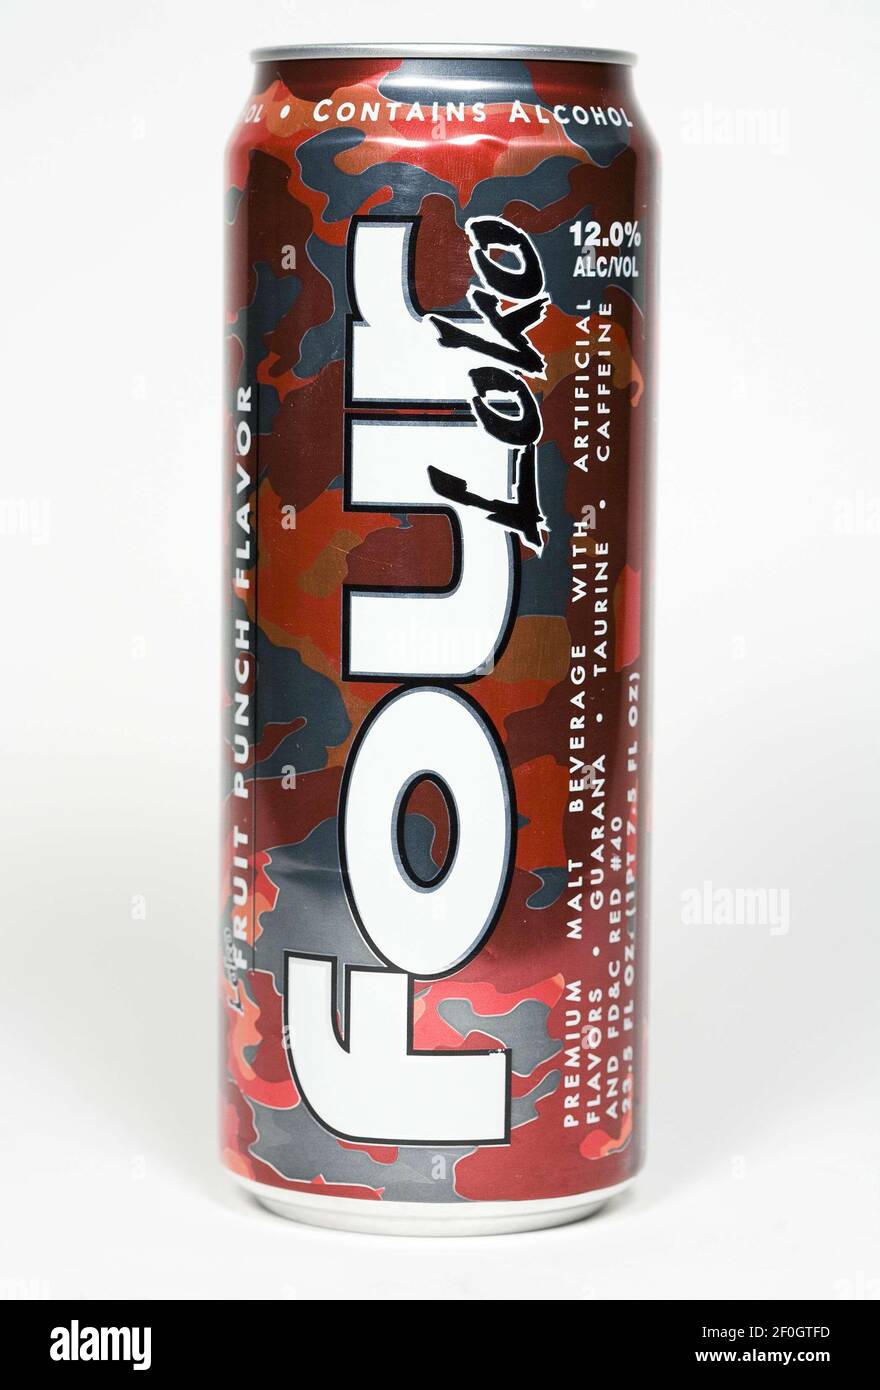 10 novembre 2010 Ã Washington, D.C. Ã Washington State a interdit la  boisson énergétique alcoolique four Loko communément appelé la «coupure  dans une CAN». Les boissons emballez un punch de niveaux élevés